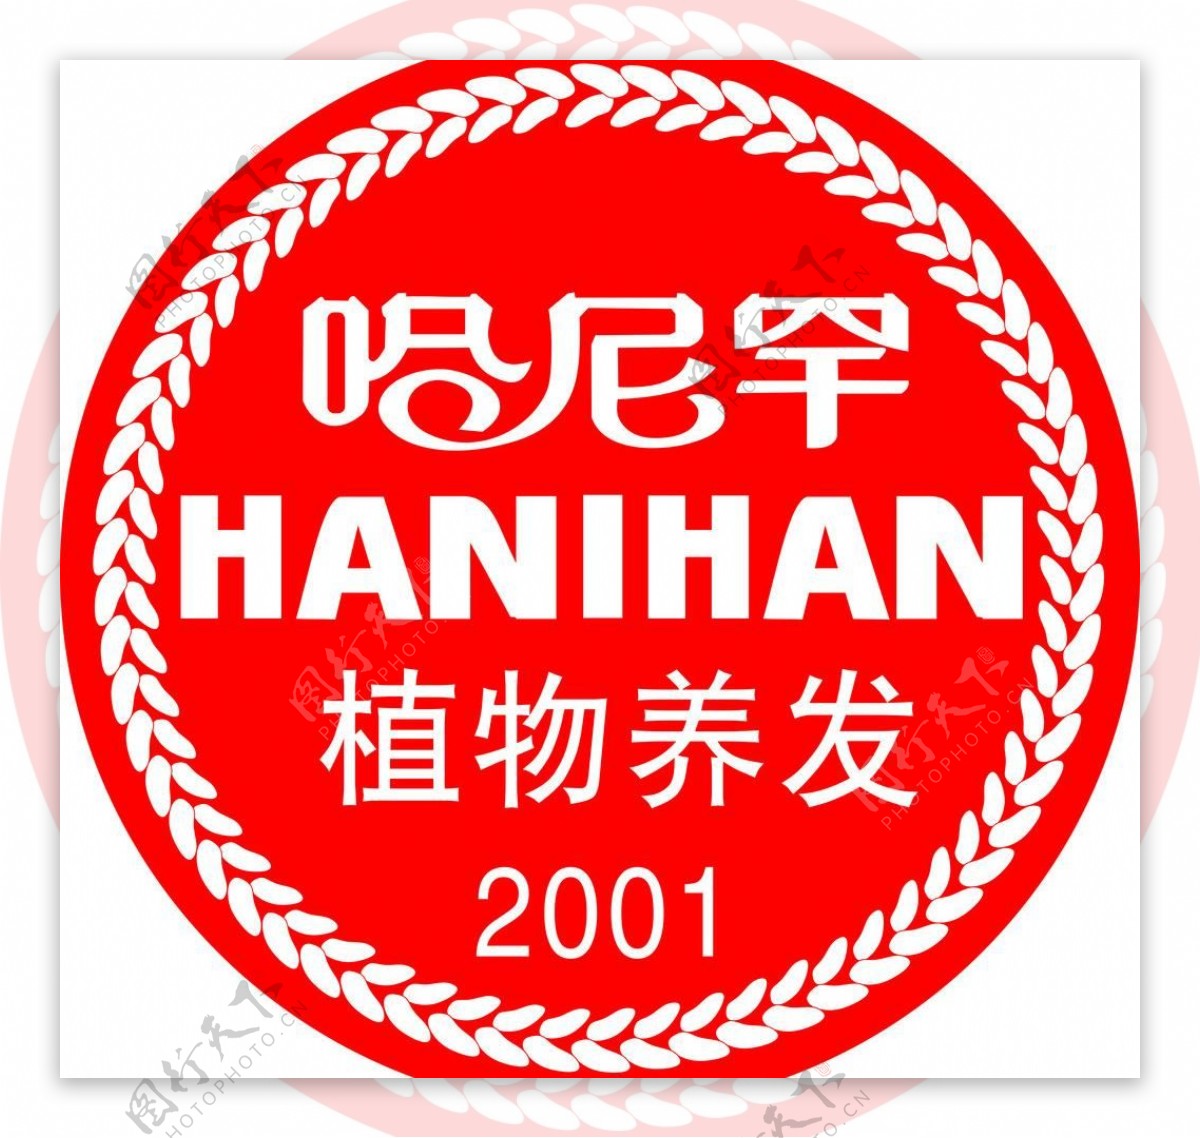 哈尼罕logo图片